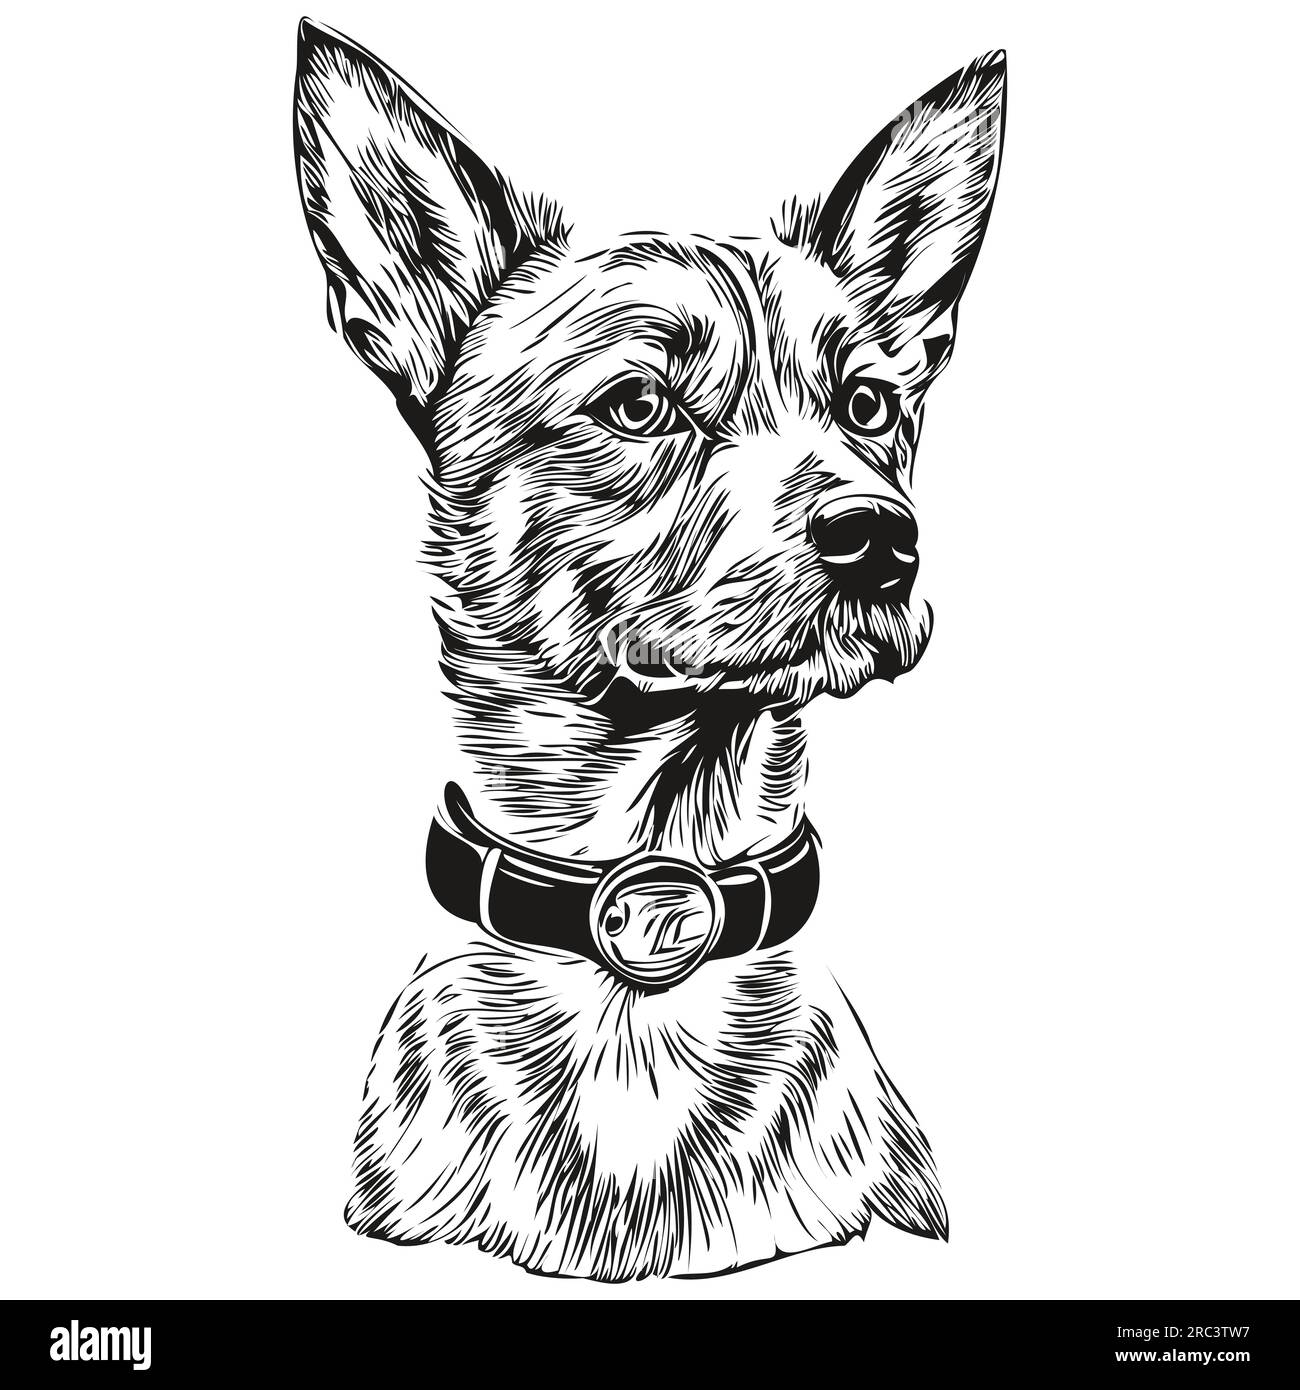 American Hairless Terrier chien dessin animé portrait d'encre de visage, dessin d'esquisse noir et blanc, tshirt imprimé animal de compagnie réaliste de race Illustration de Vecteur